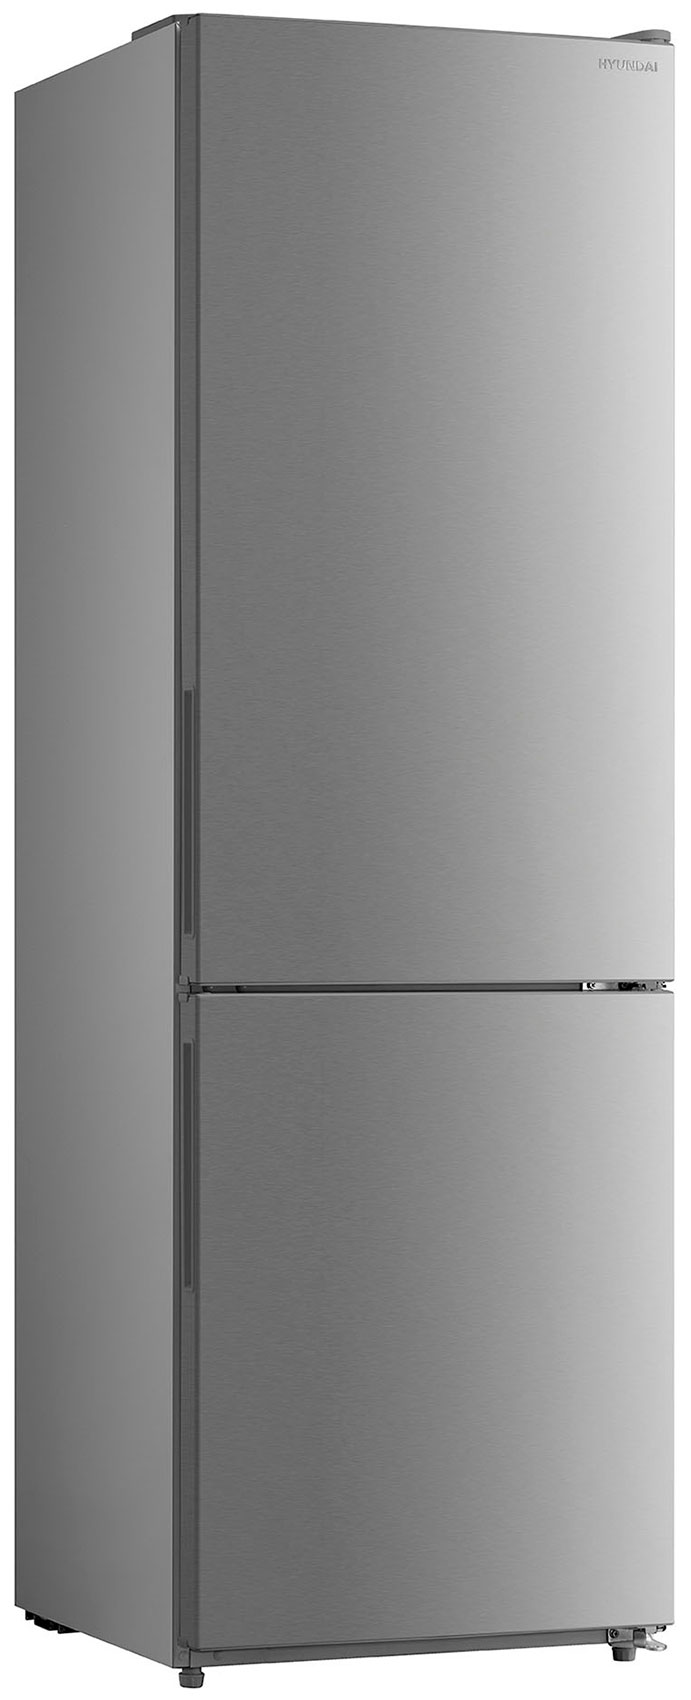 Двухкамерный холодильник Hyundai CC3093FIX нержавеющая сталь двухкамерный холодильник hyundai cc3595fwt белый